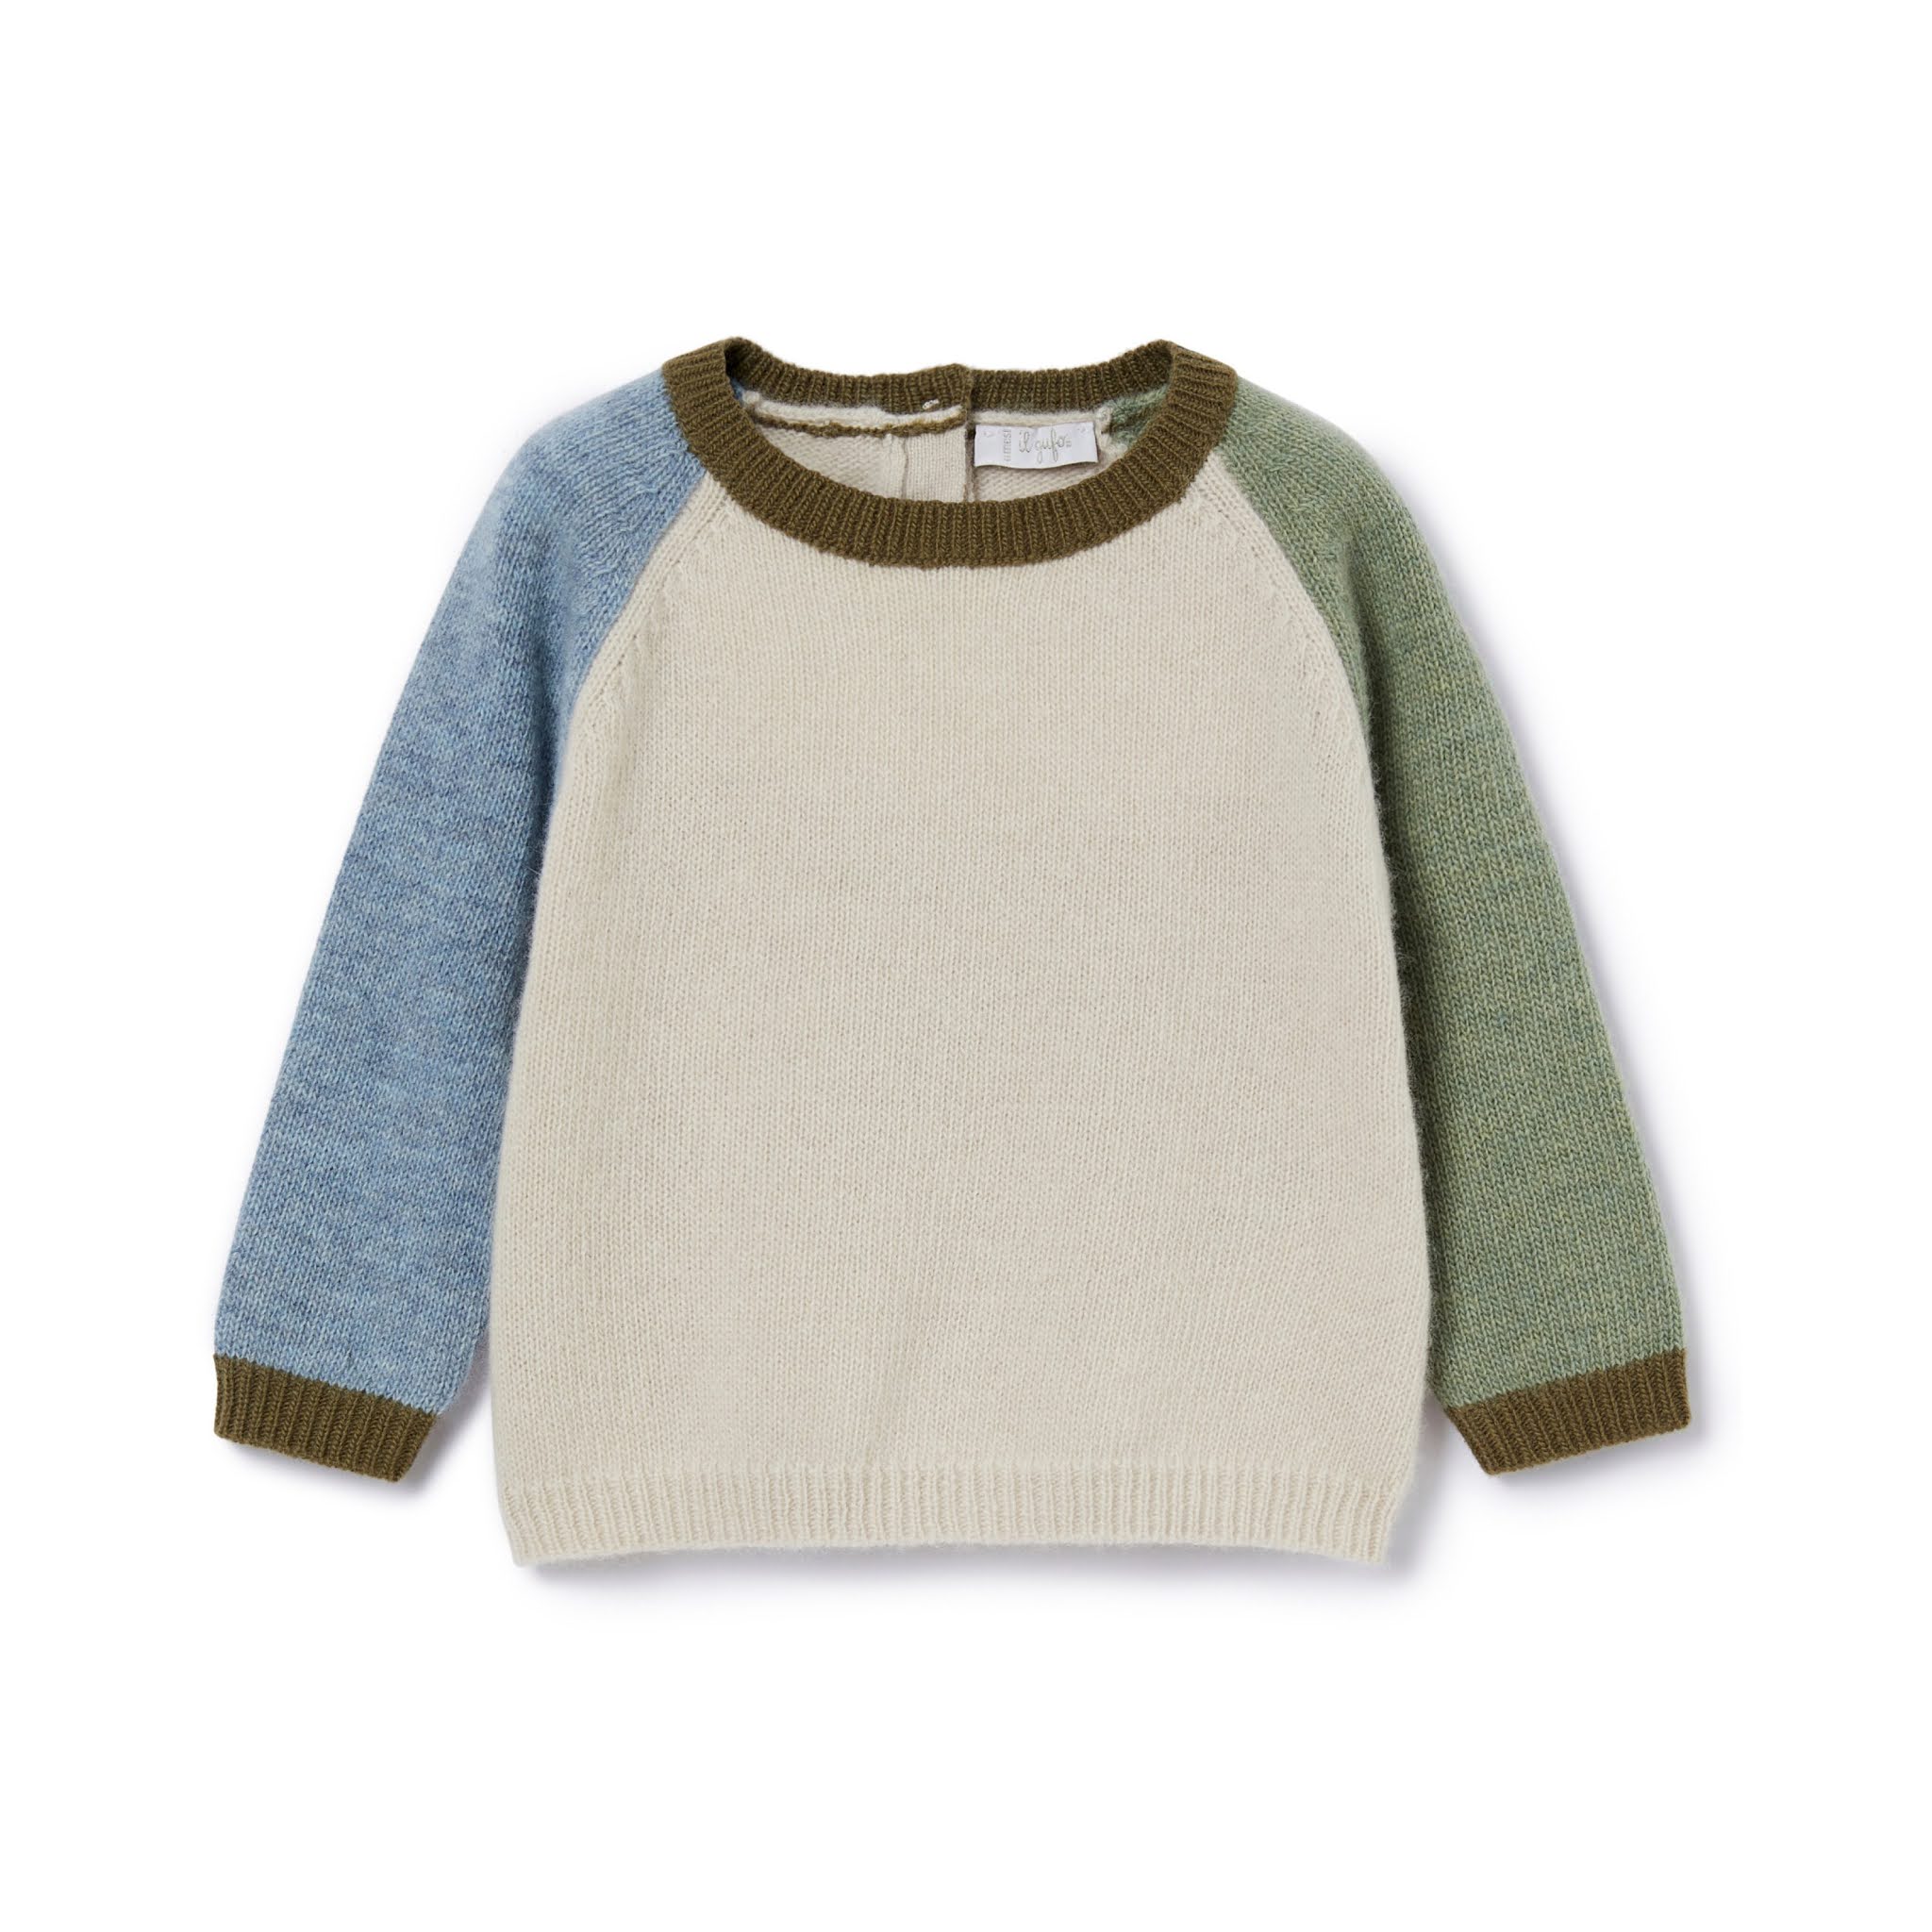 Boys Colourblock Sweater from Il Gufo